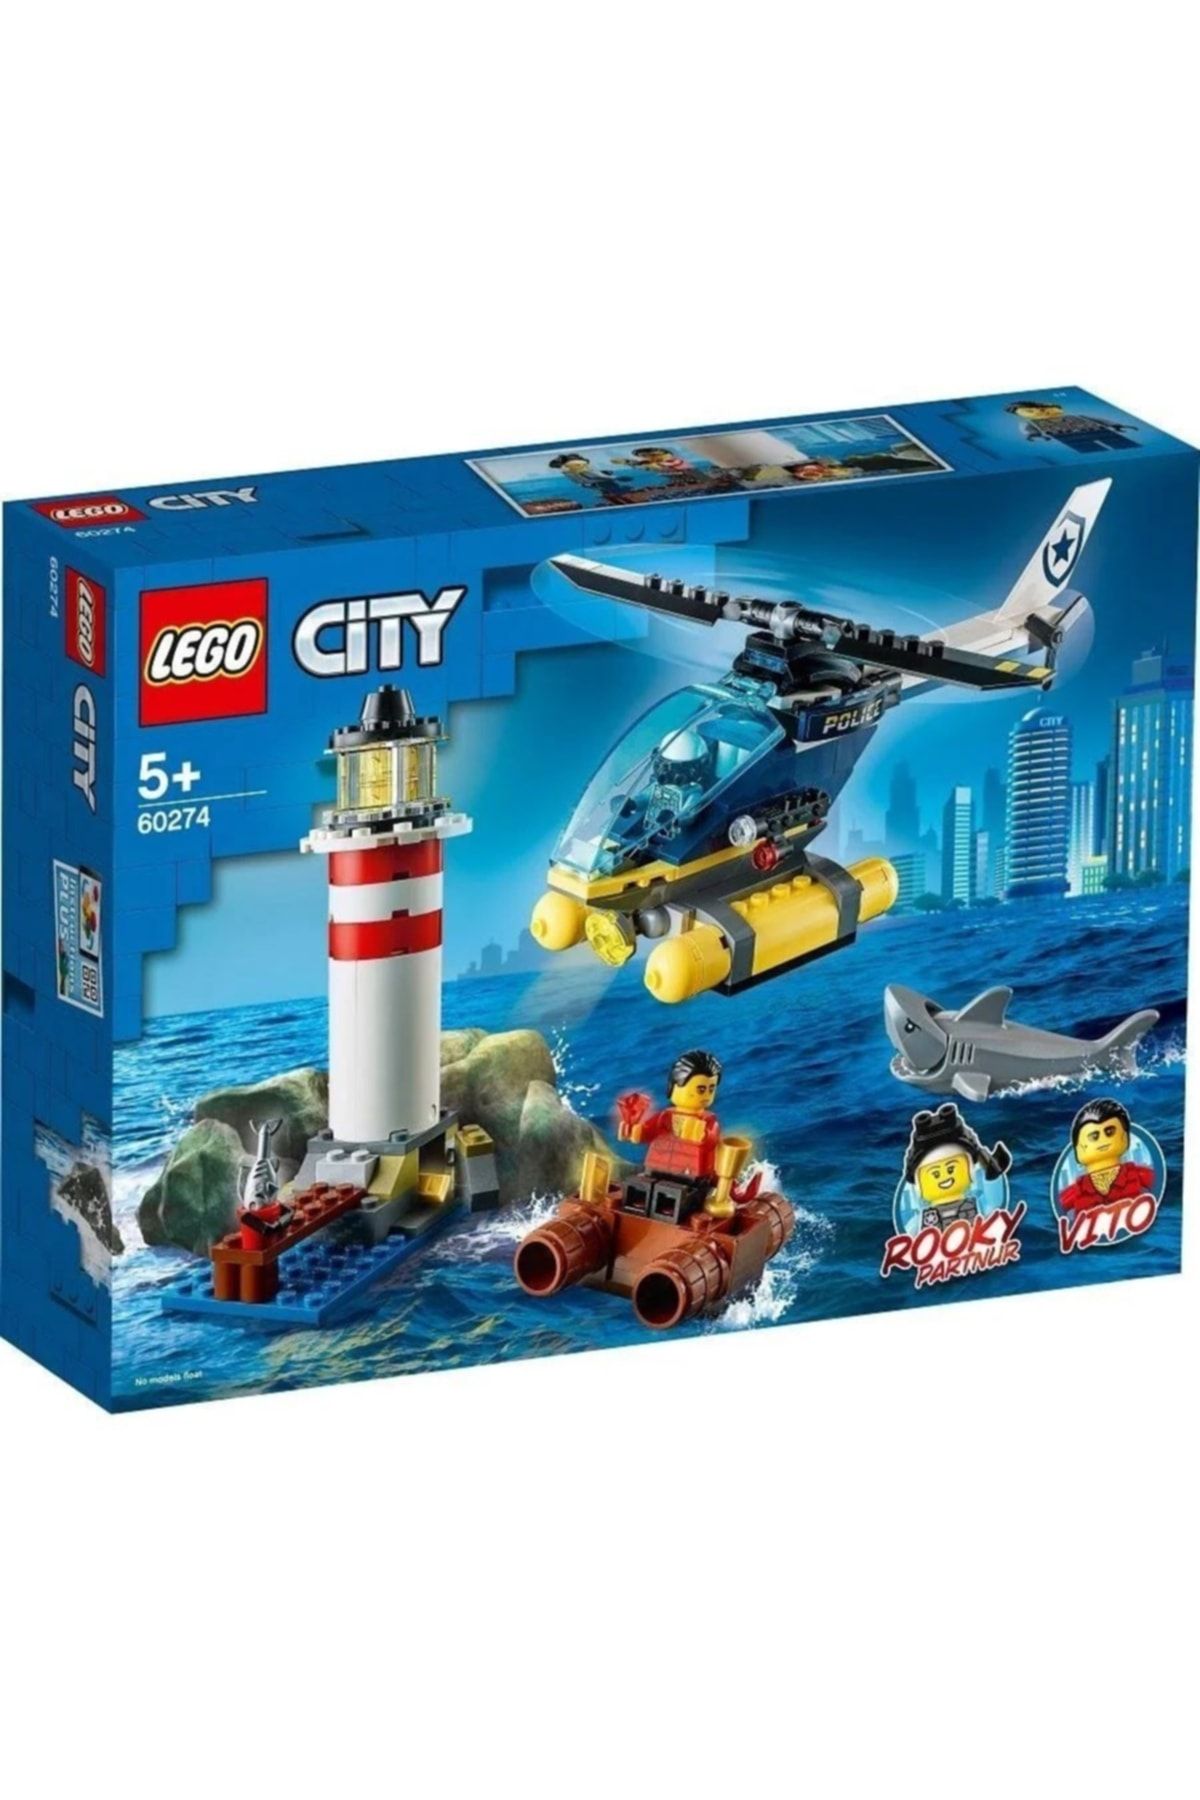 LEGO City Elit Polis Deniz Feneri Operasyonu Oyuncak 60274